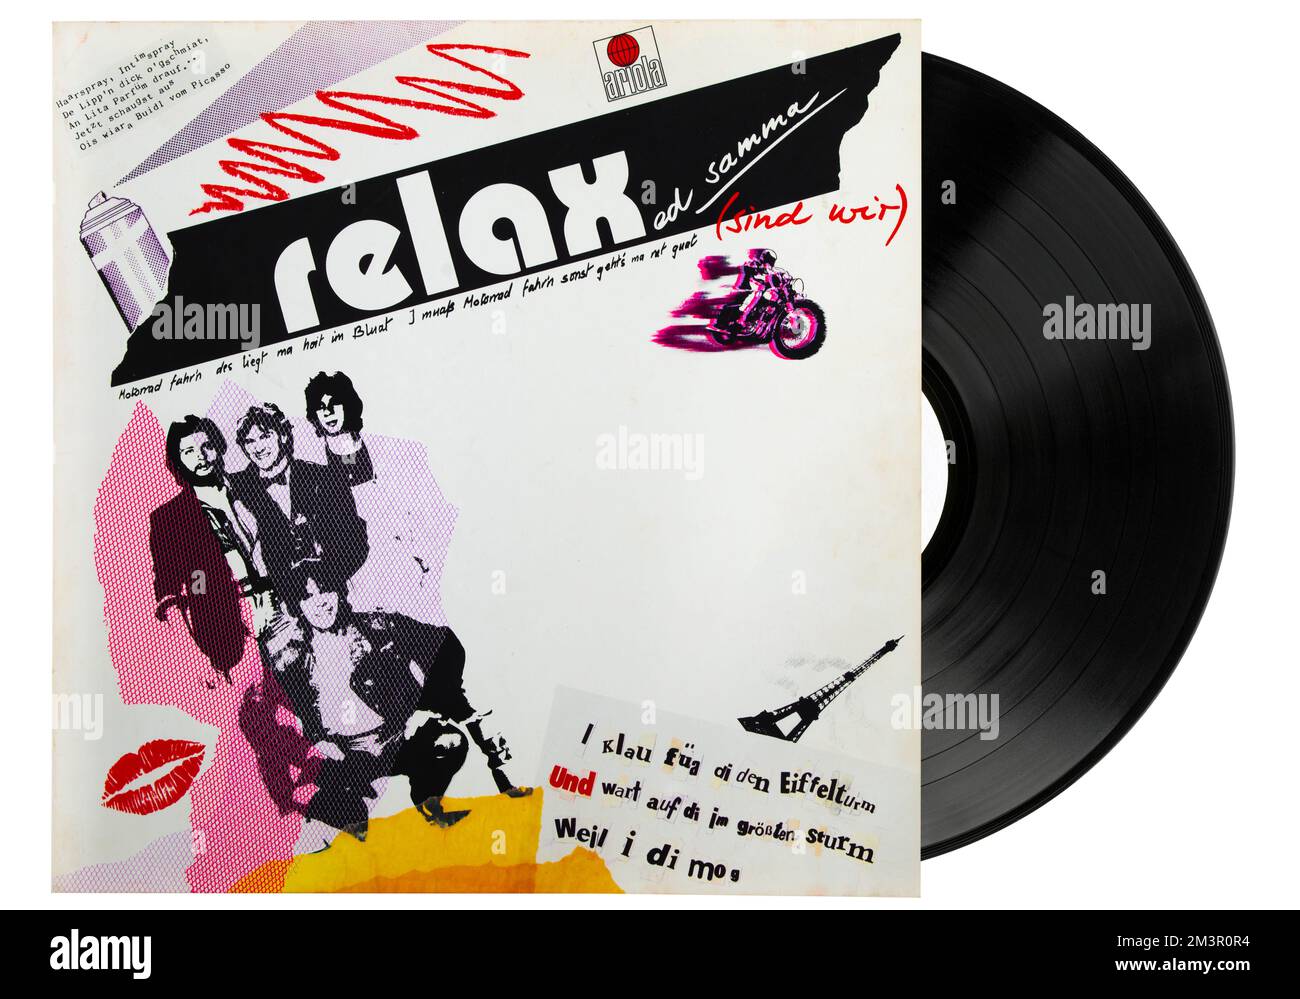 Relax - Relaxed Samma (Are We) Titelseite und langjähriger Rekord veröffentlicht 1982. Relax ist eine deutsche Musikgruppe, die in den 1980er Jahren am berühmtesten war. Stockfoto